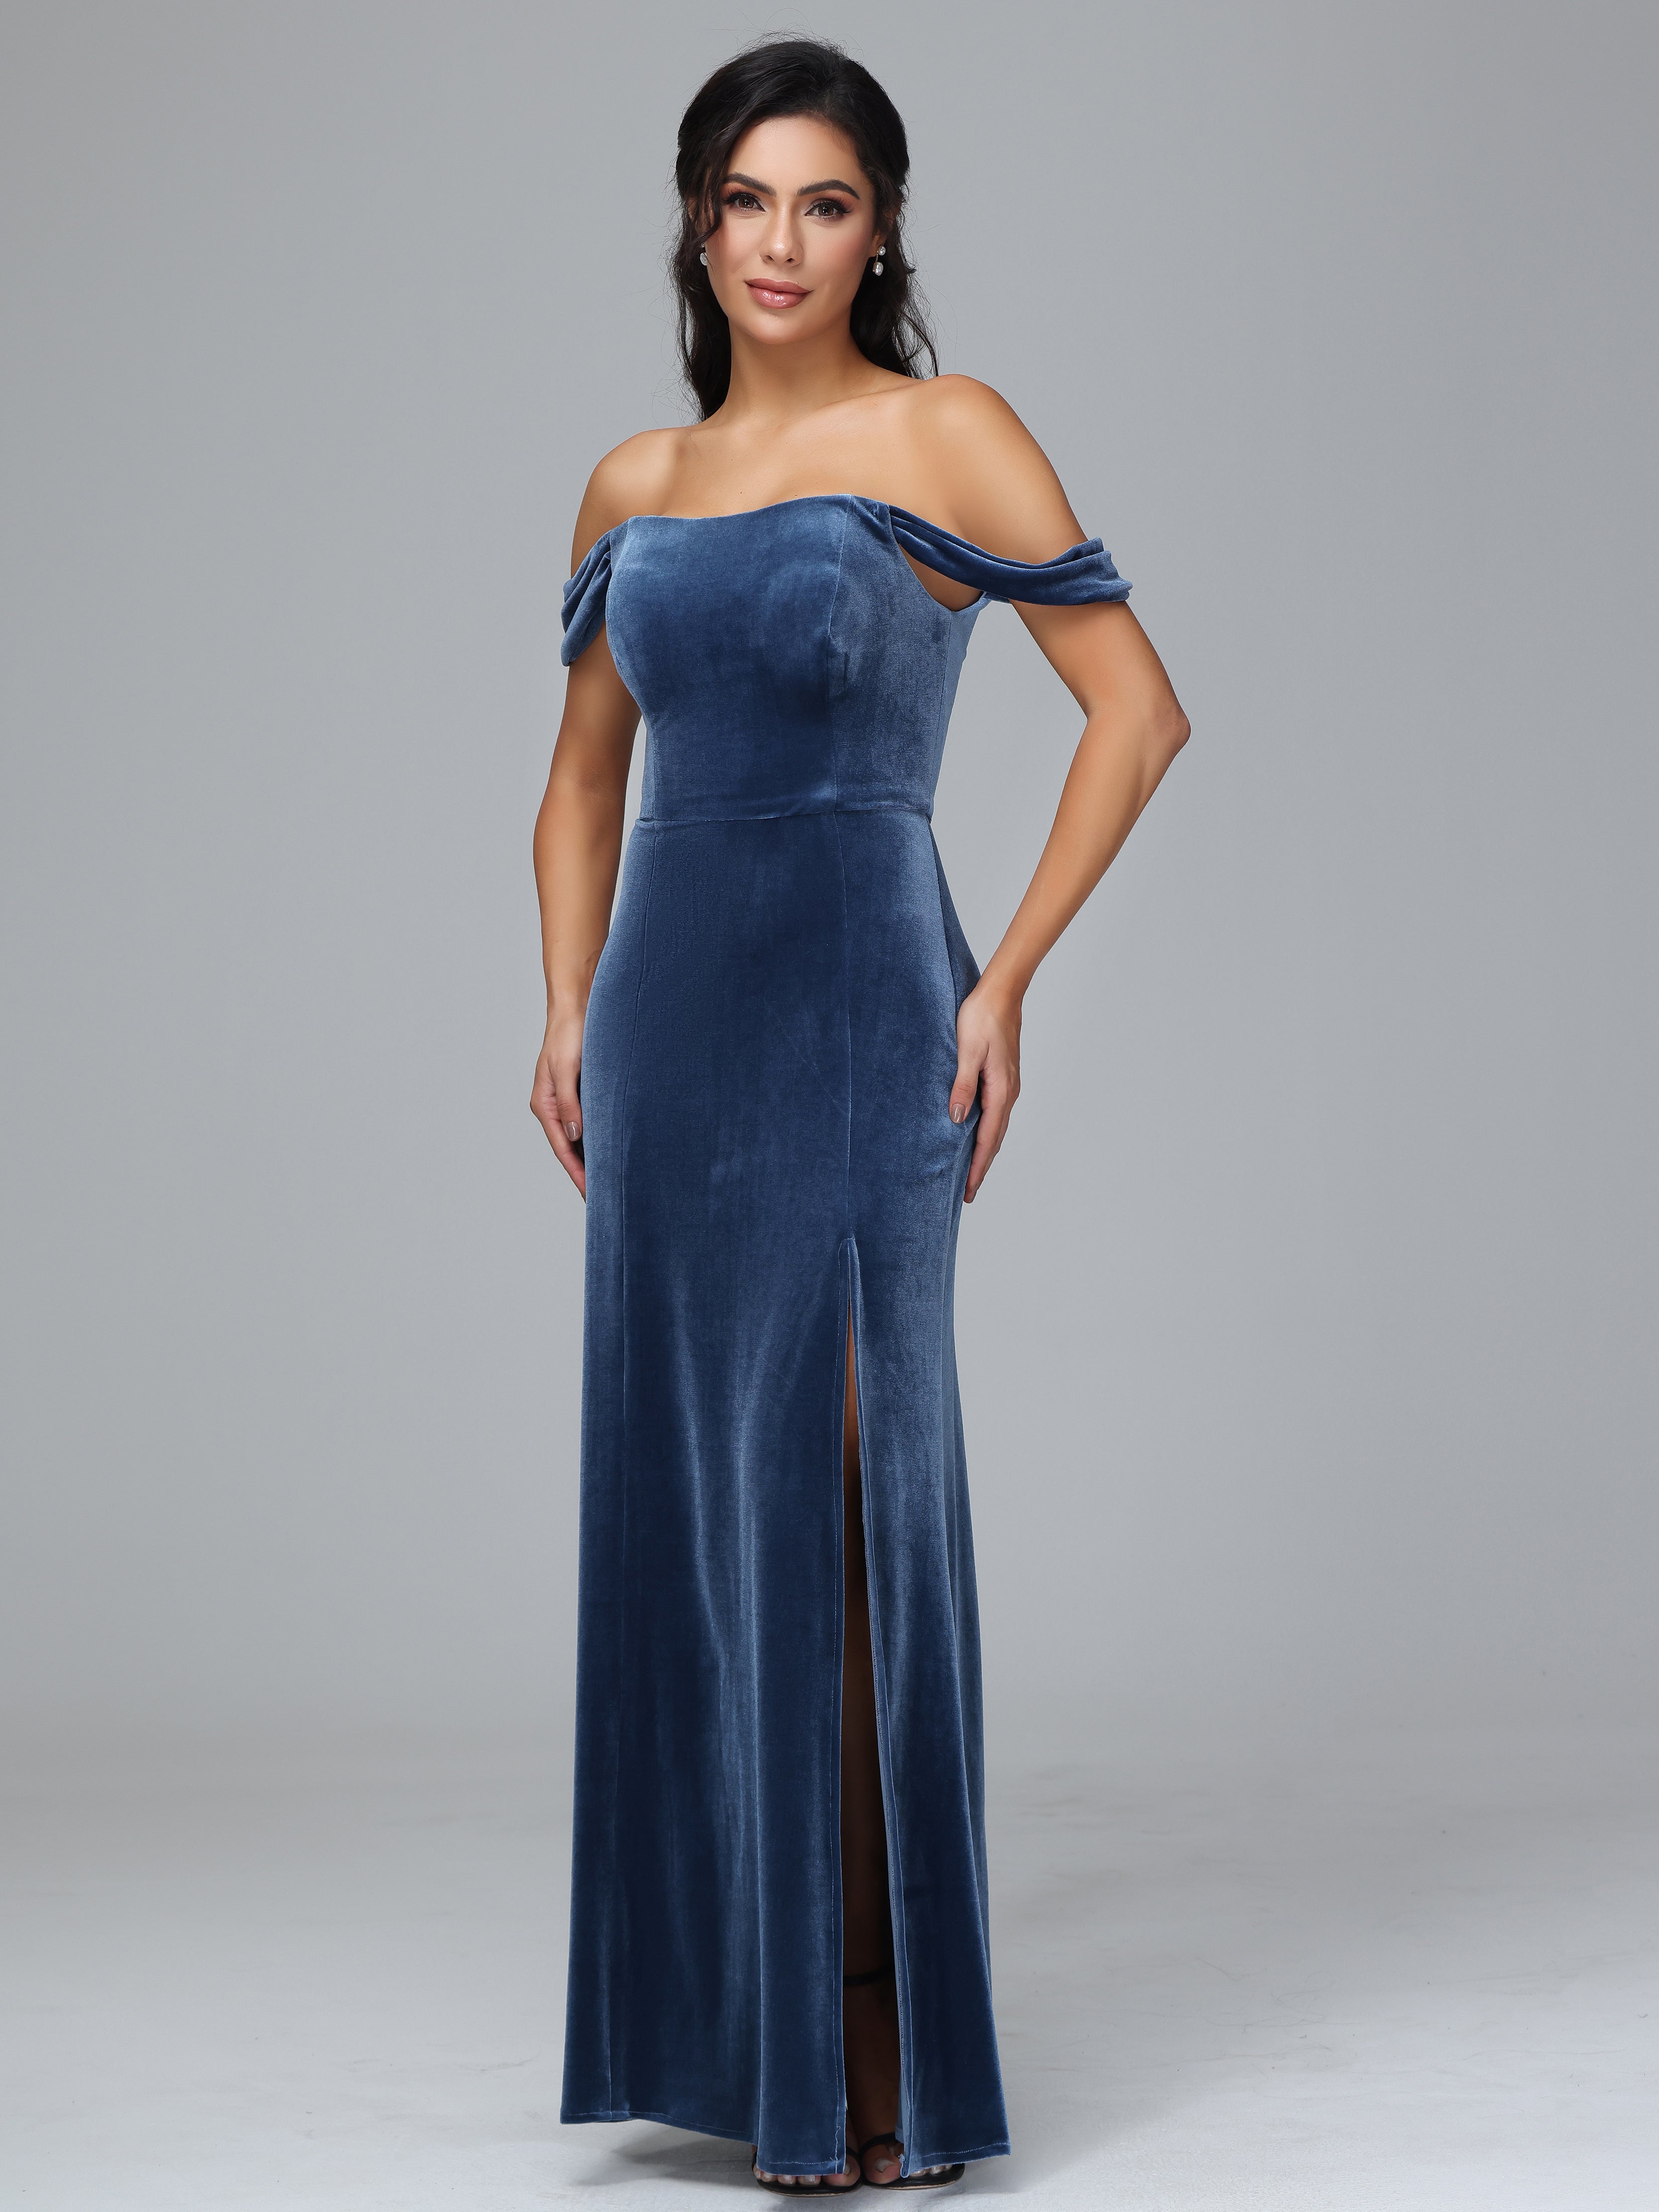 Shop our new Velvet Bridesmaid Dresses | Cicinia